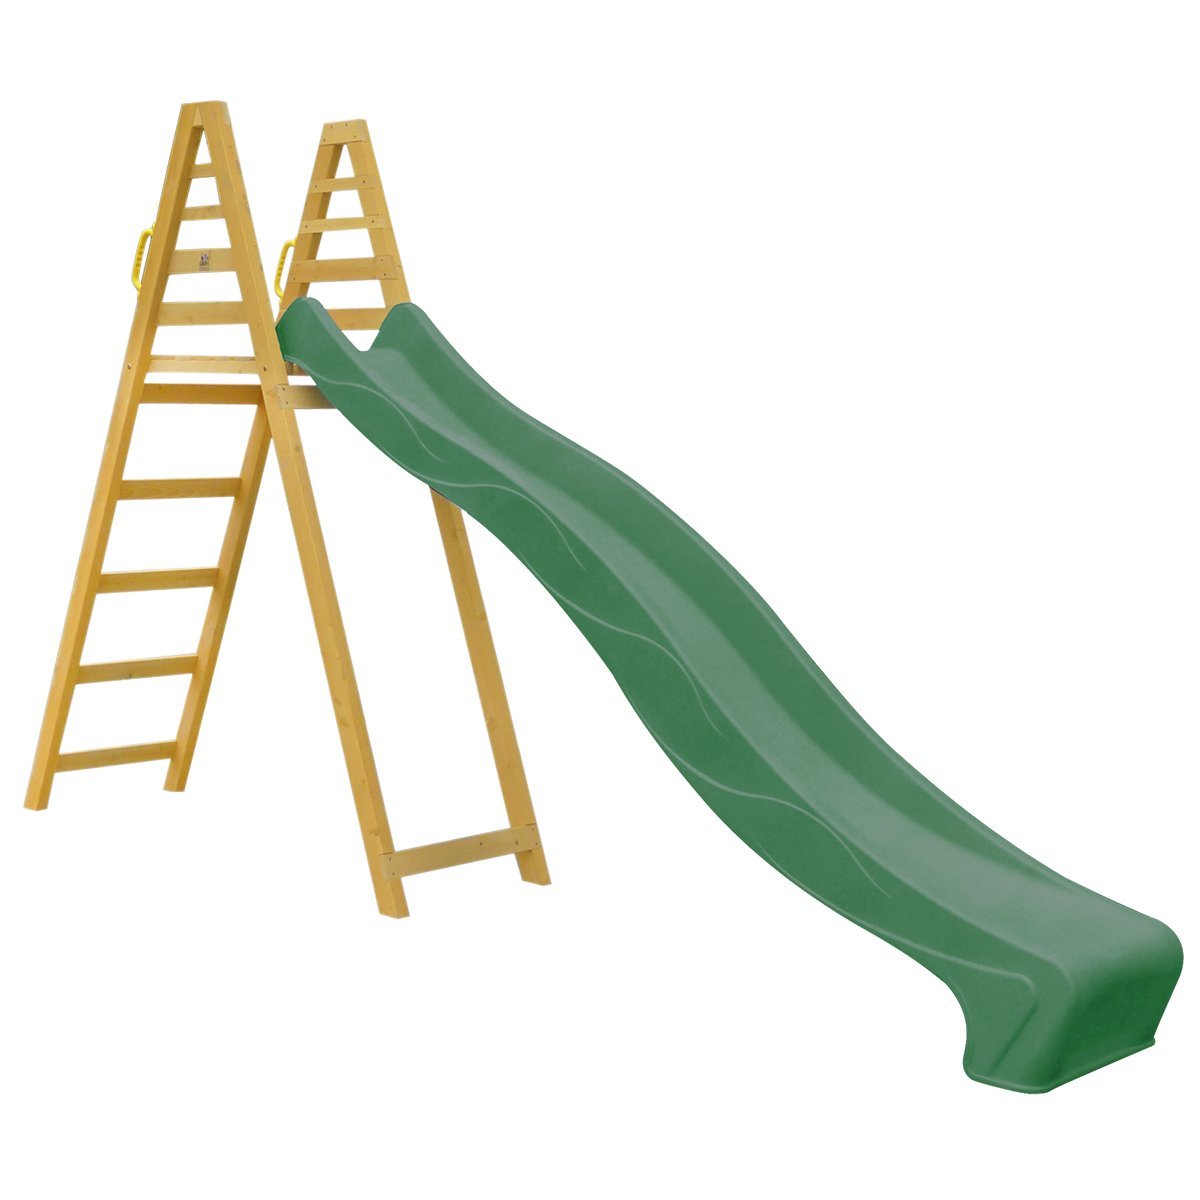 Shop Lifespan Kids Jumbo Slide 3 Metre Green: Big Sliding Fun